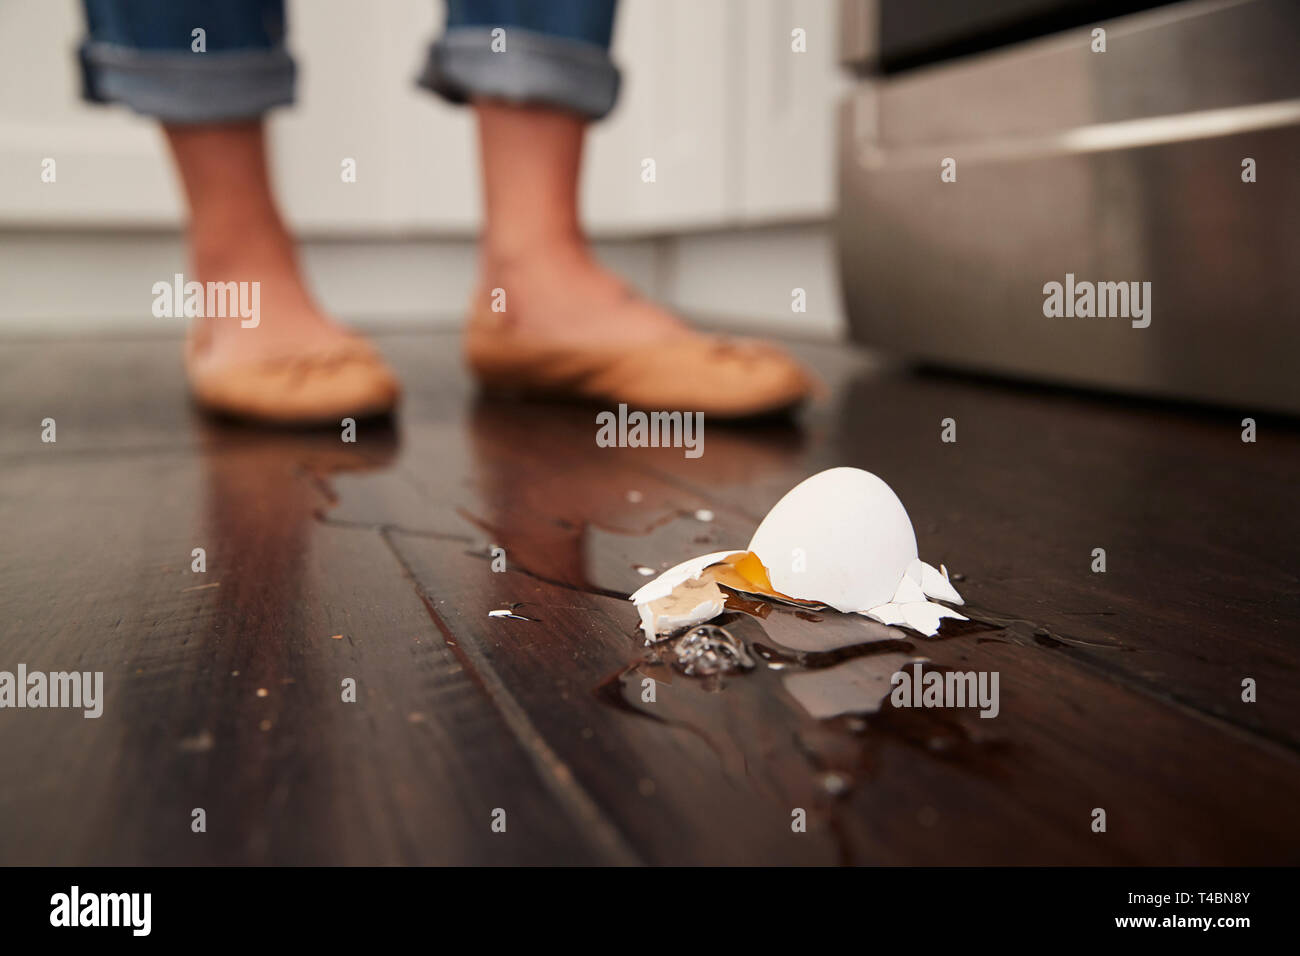 Un uovo rotto sul pavimento della cucina dopo un piccolo incidente di cottura, piedi in background, angolo basso Foto Stock